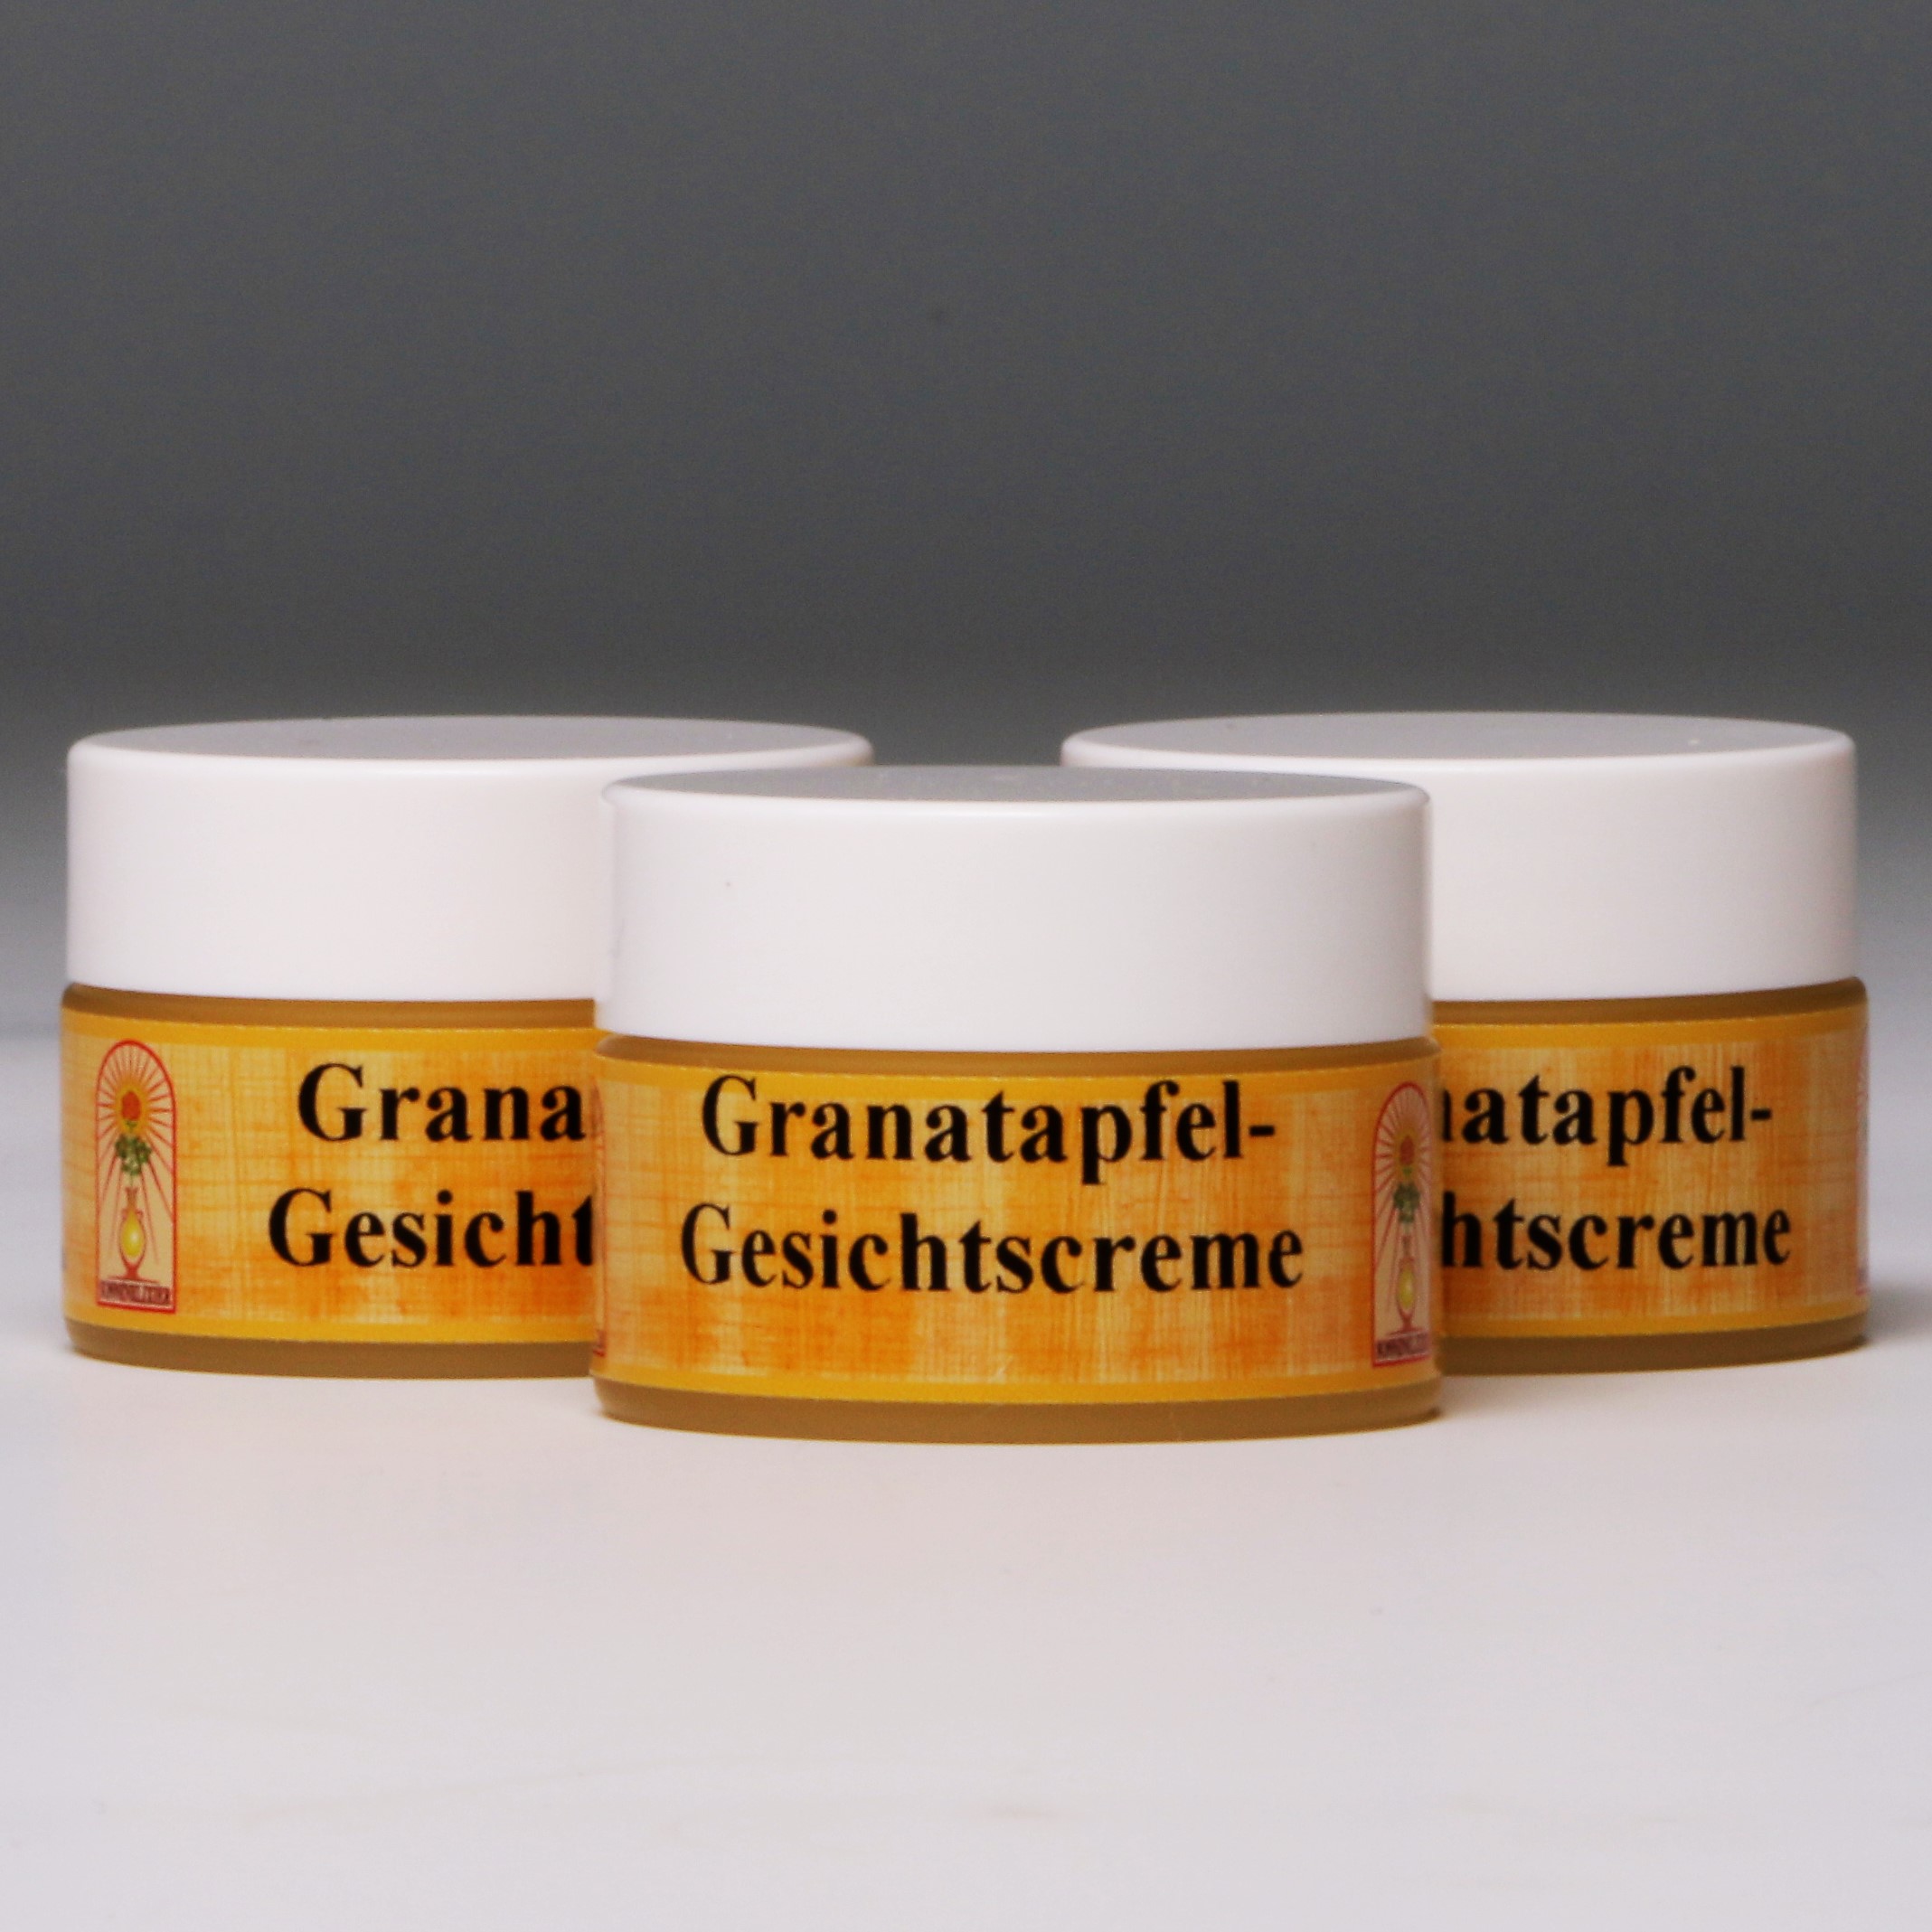 Granatapfel Gesichtscreme (3x15ml)  günstig bestellen bei Linny-Naturkost